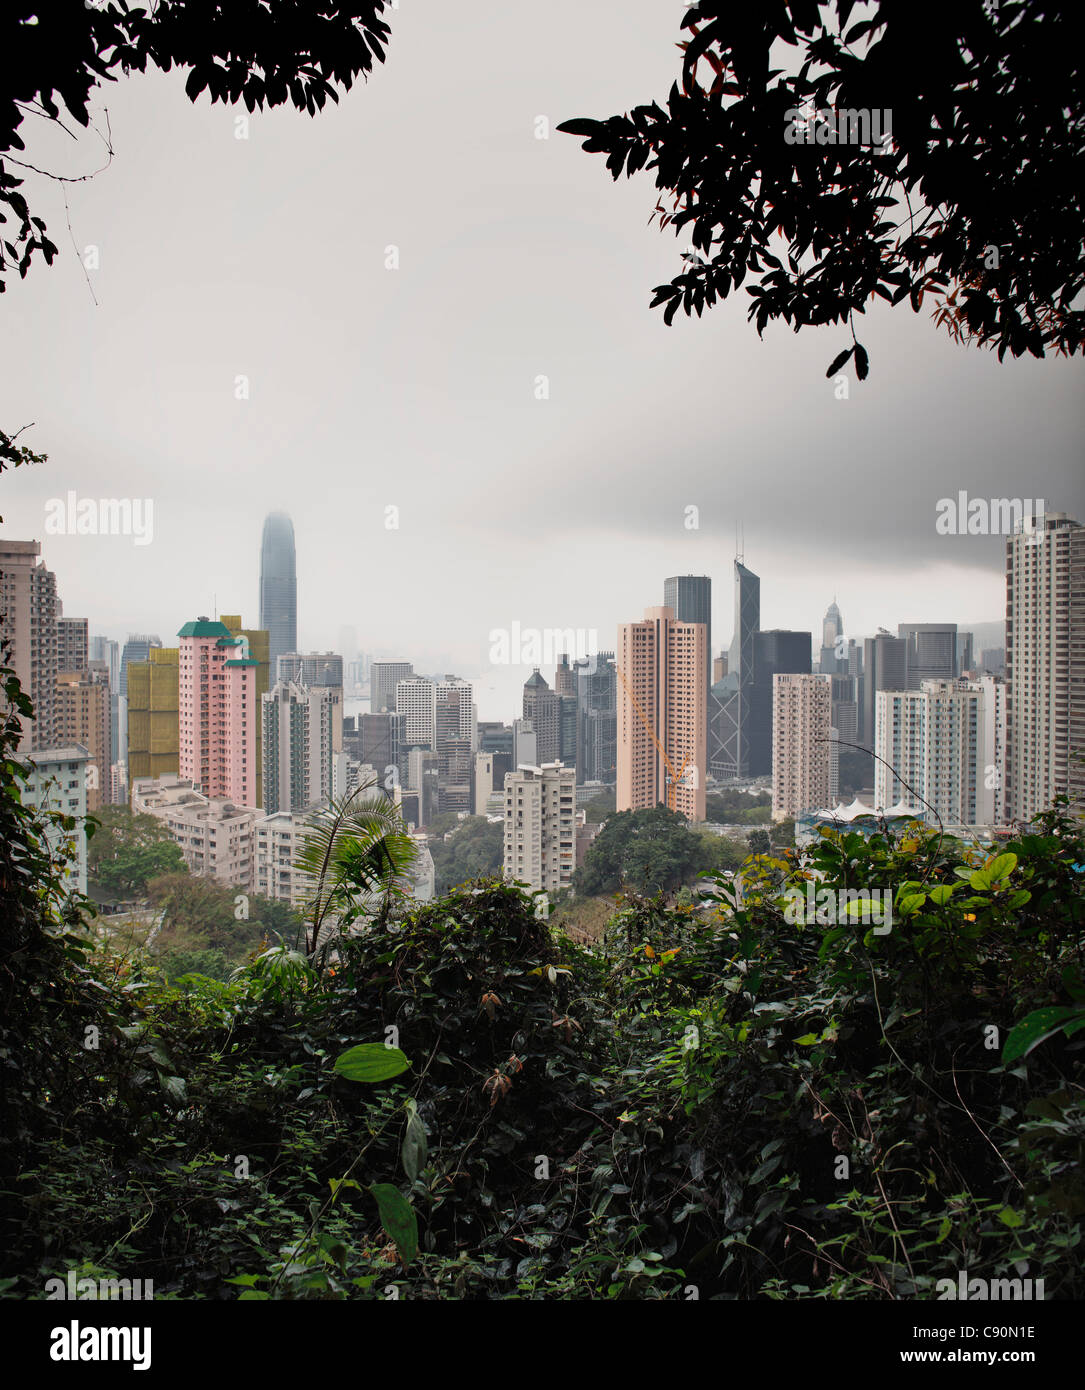 View through trees towards the Hongkong Skyline, Hong Kong, China Stock Photo